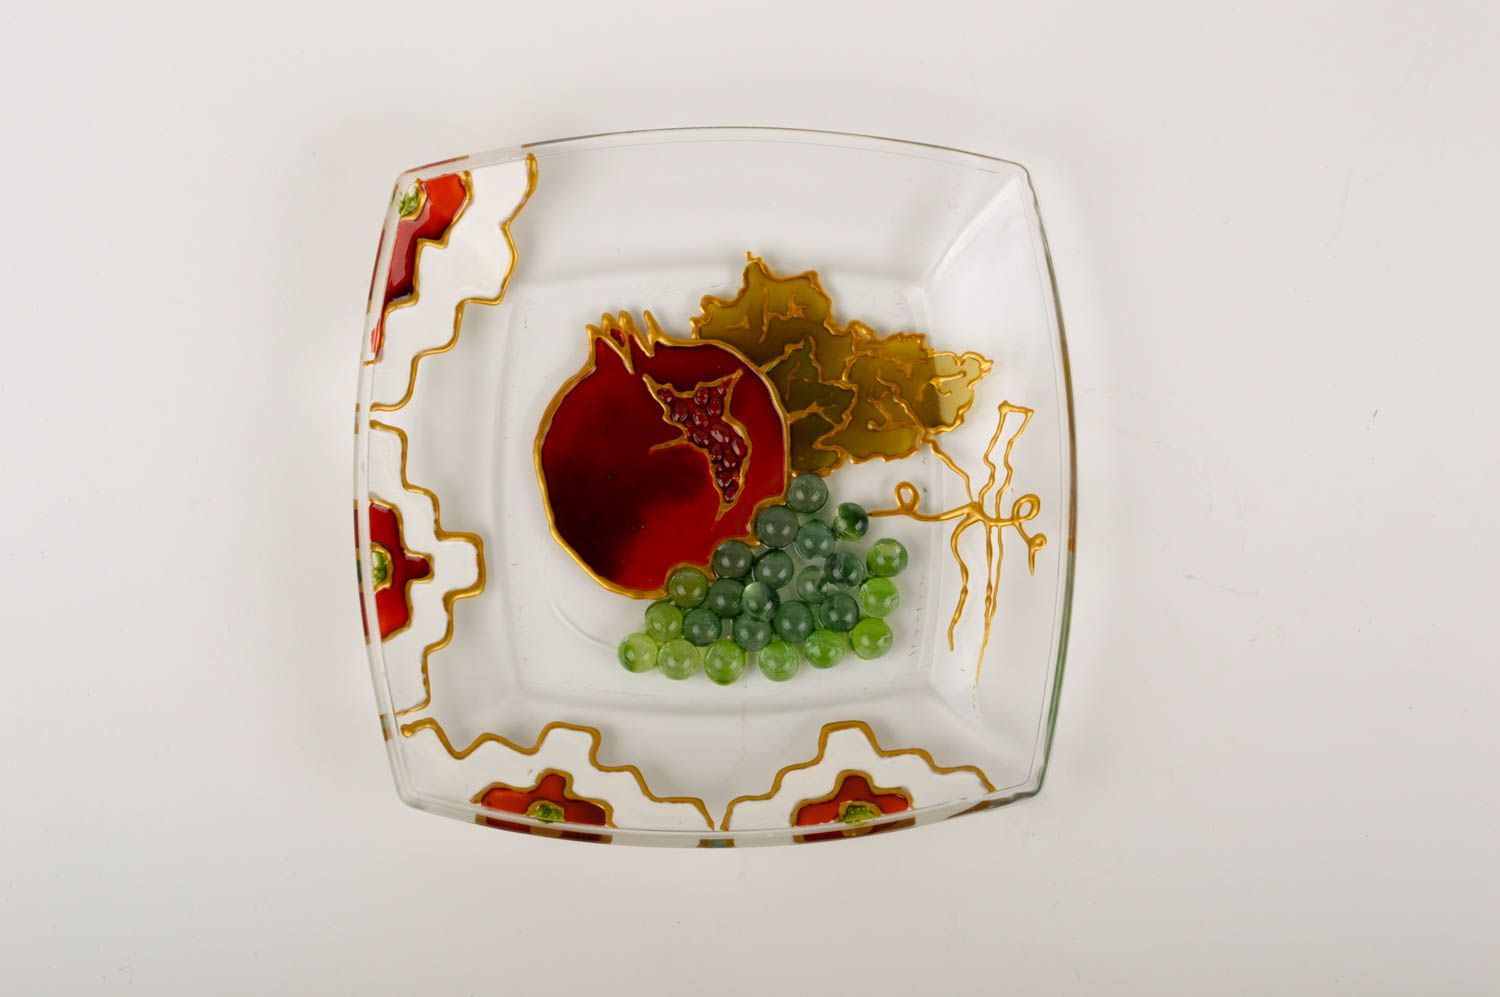 Teller Glas handmade Geschirr Glas Geschenk Idee Haus Dekor bemalt grell schön foto 2